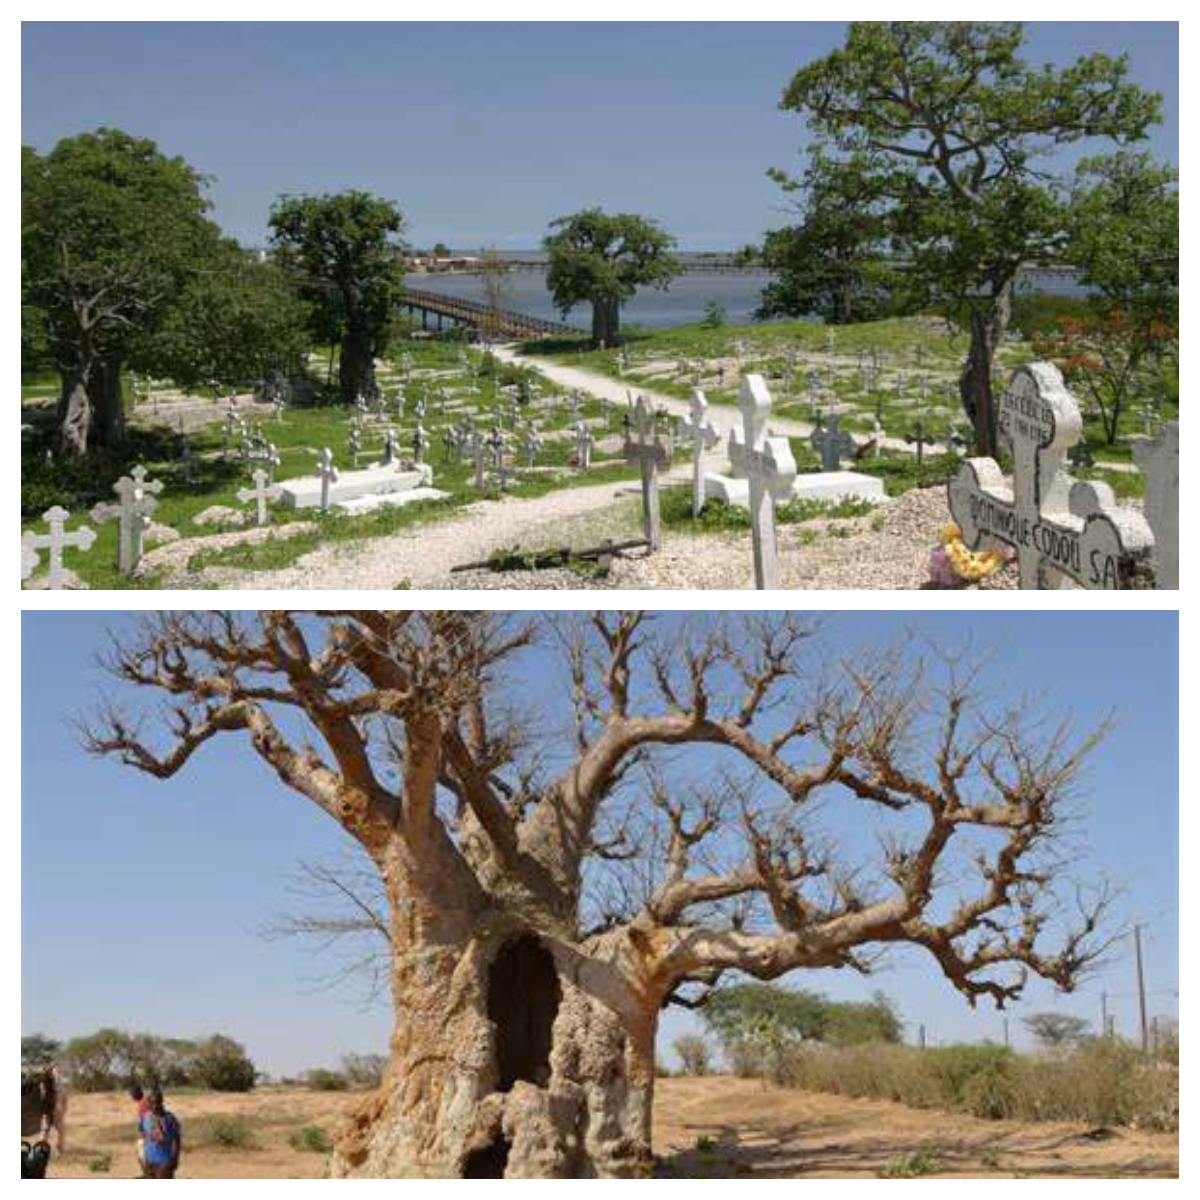 Au Sénégal, les baobabs ploient sous la pression des cimentiers